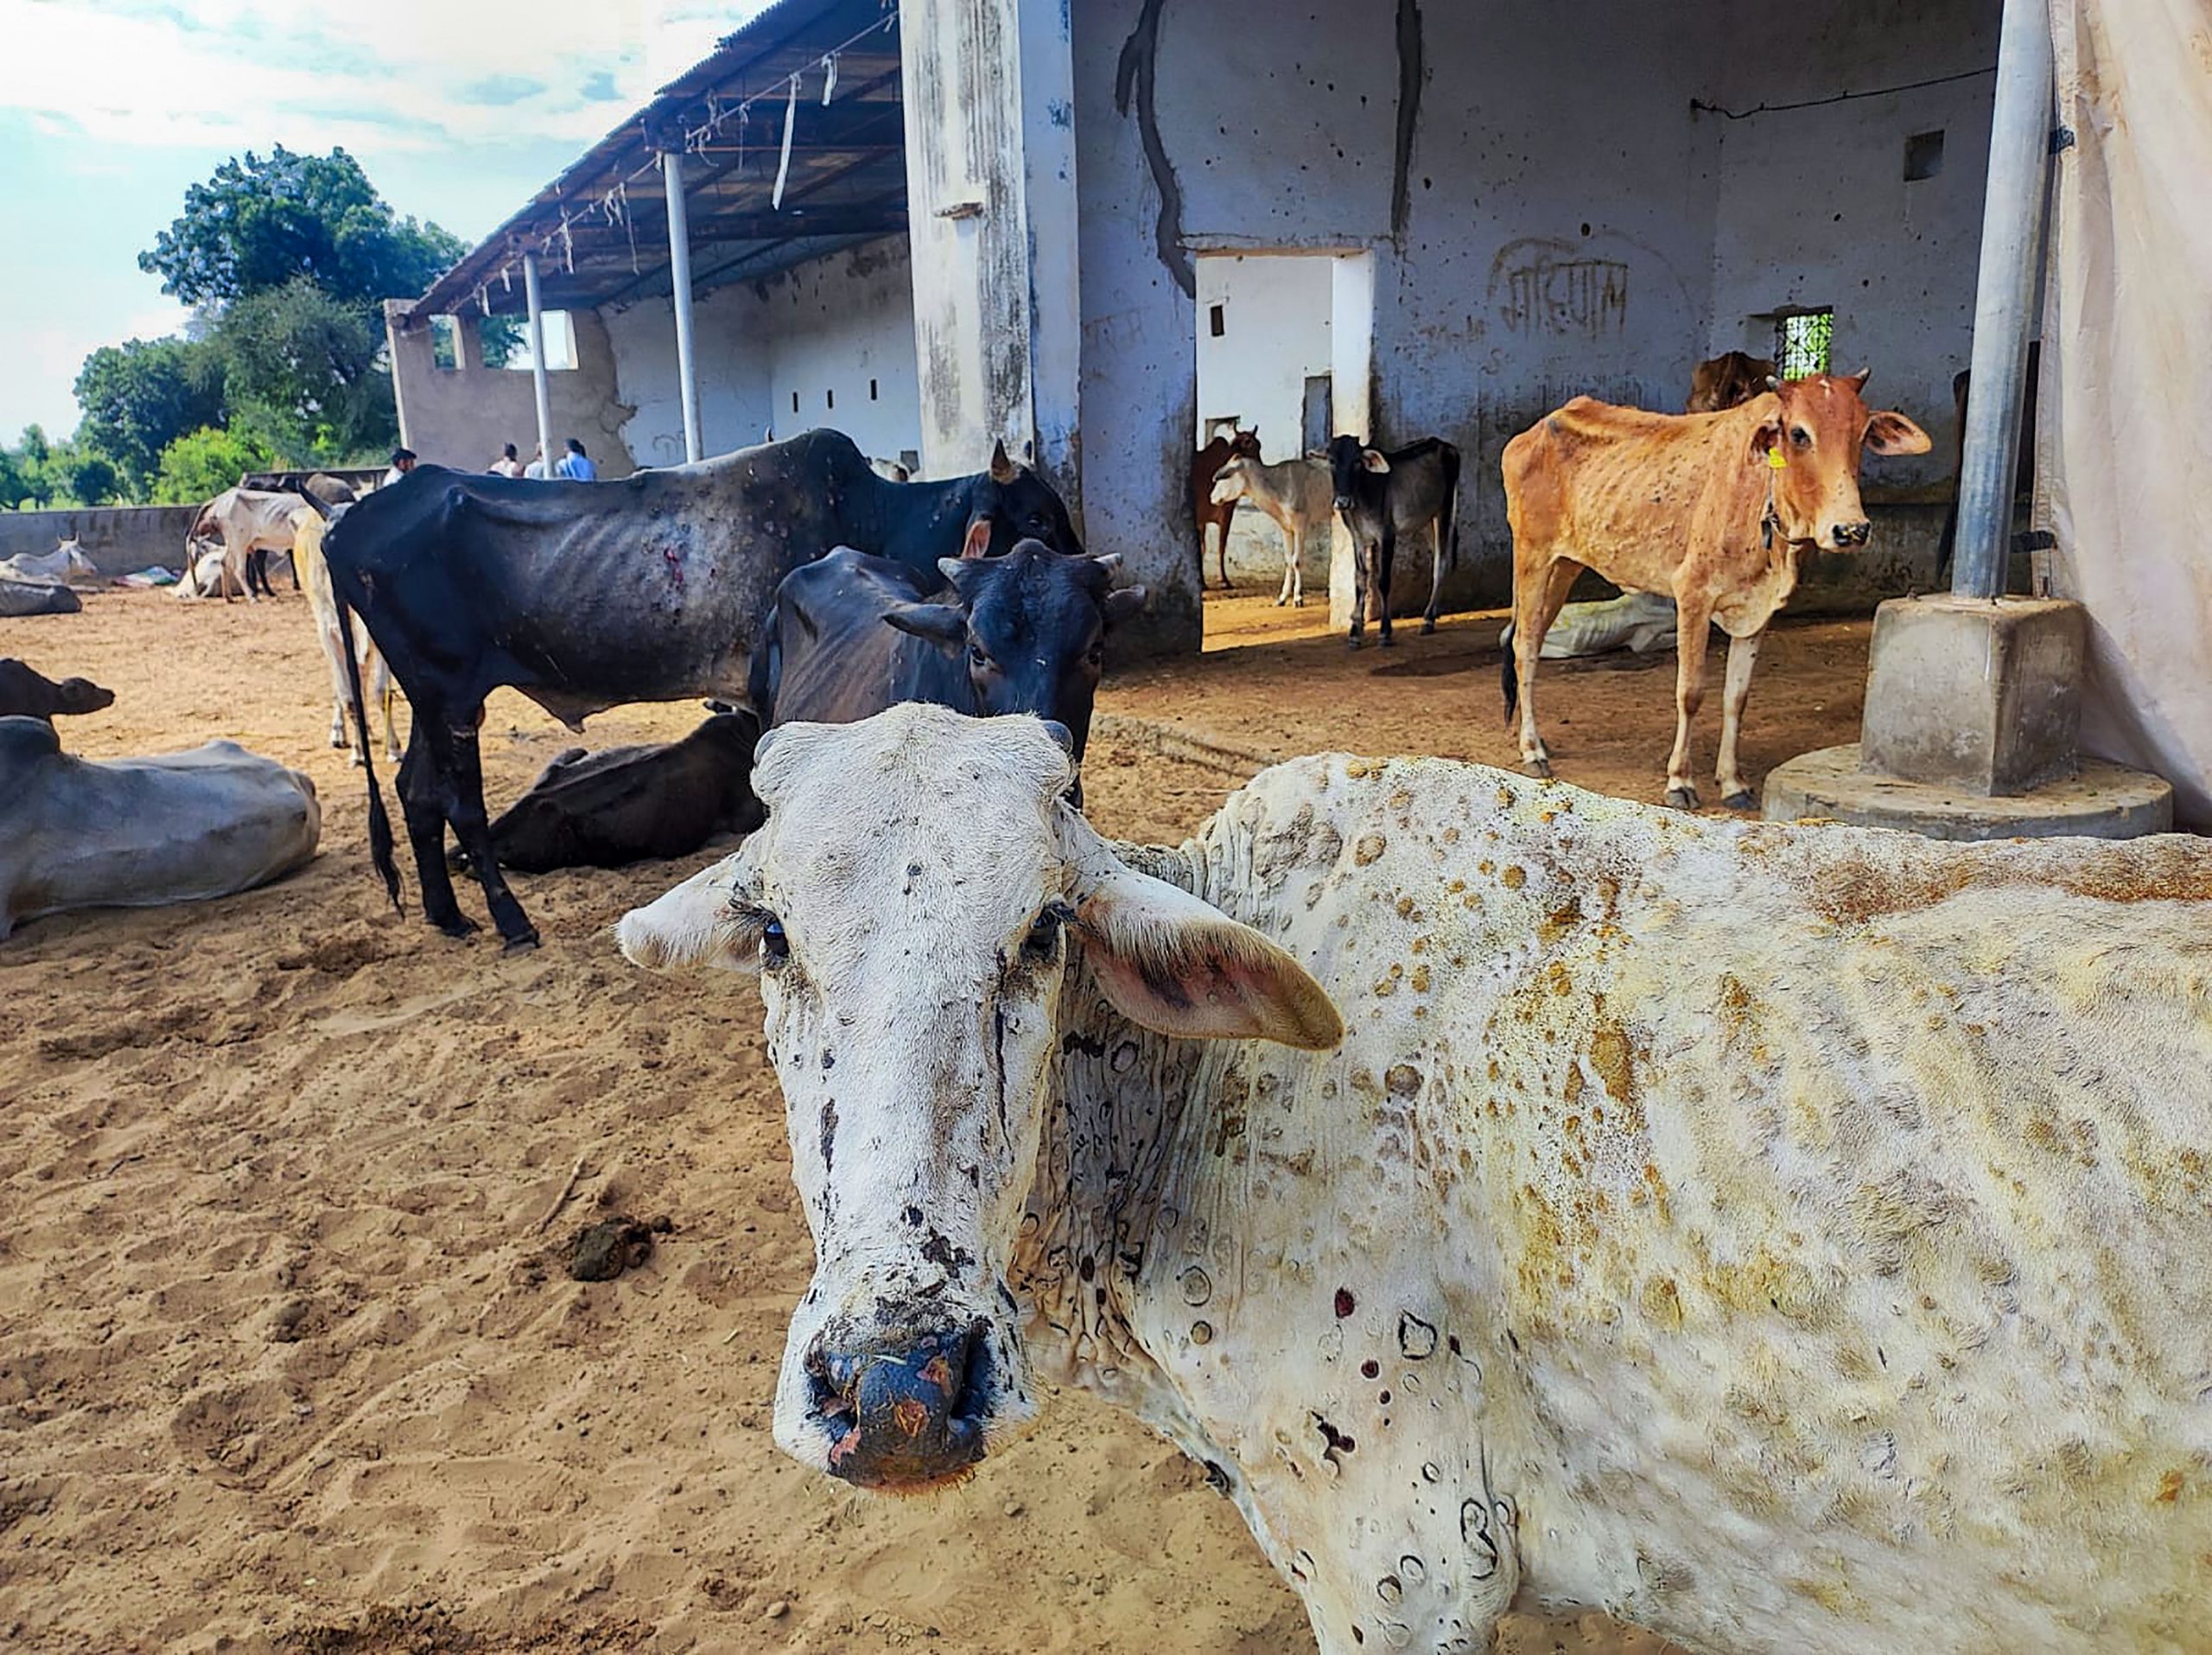 How does lumpy skin disease spread in cattle?